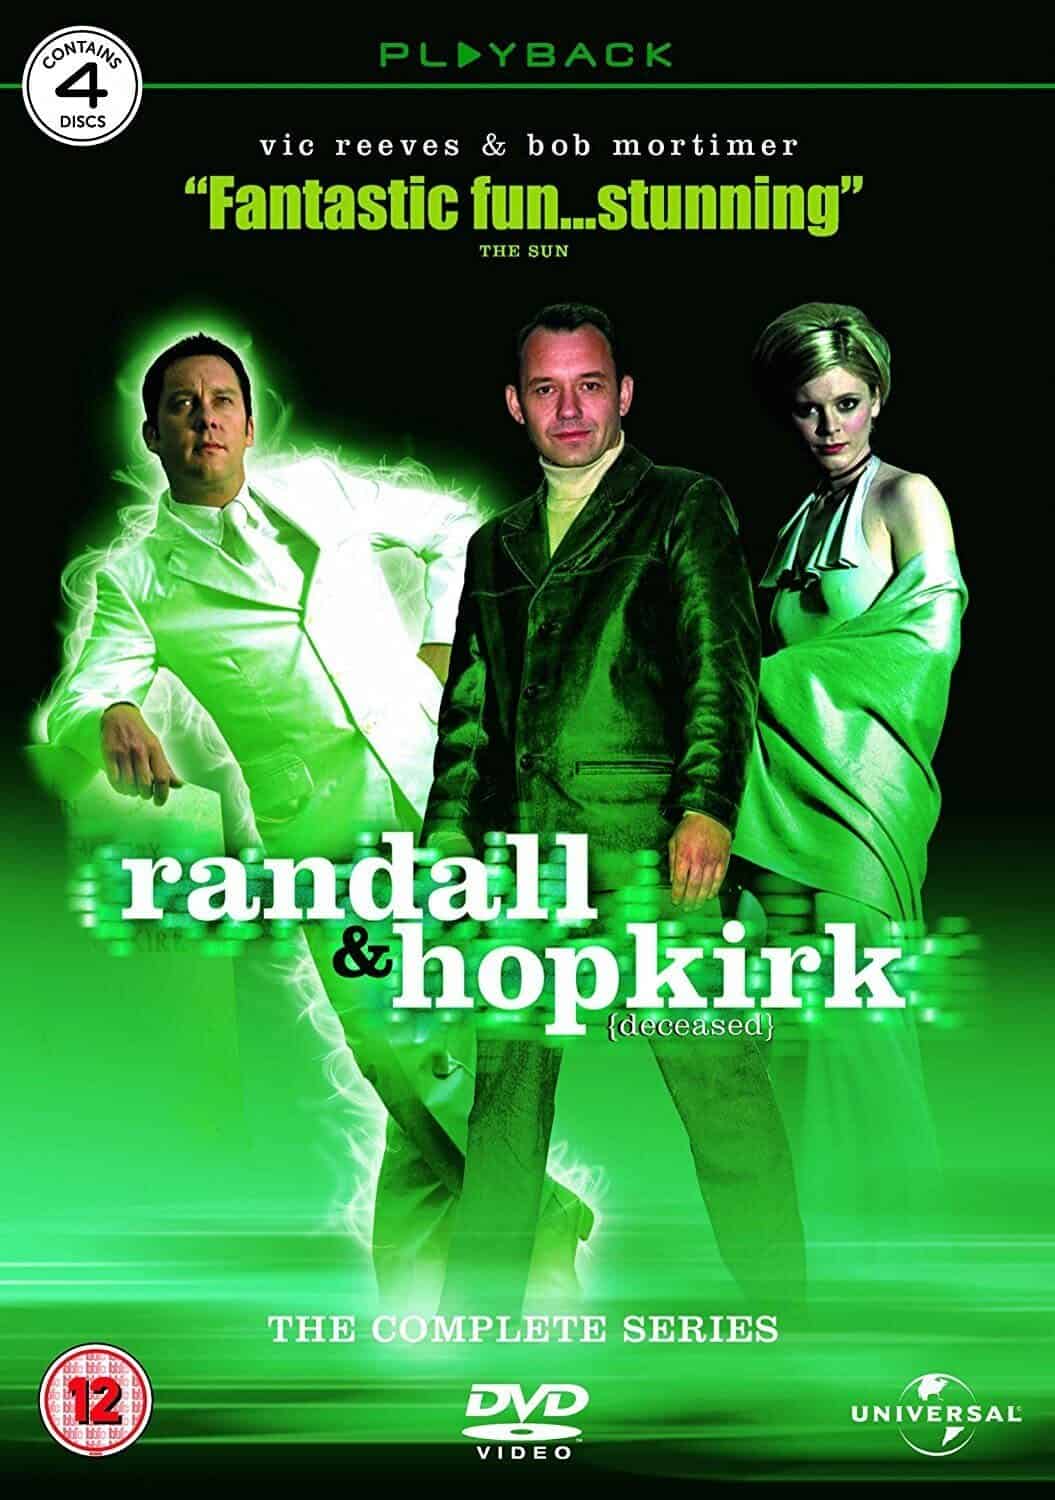 Randall and Hopkirk (Deceased) 